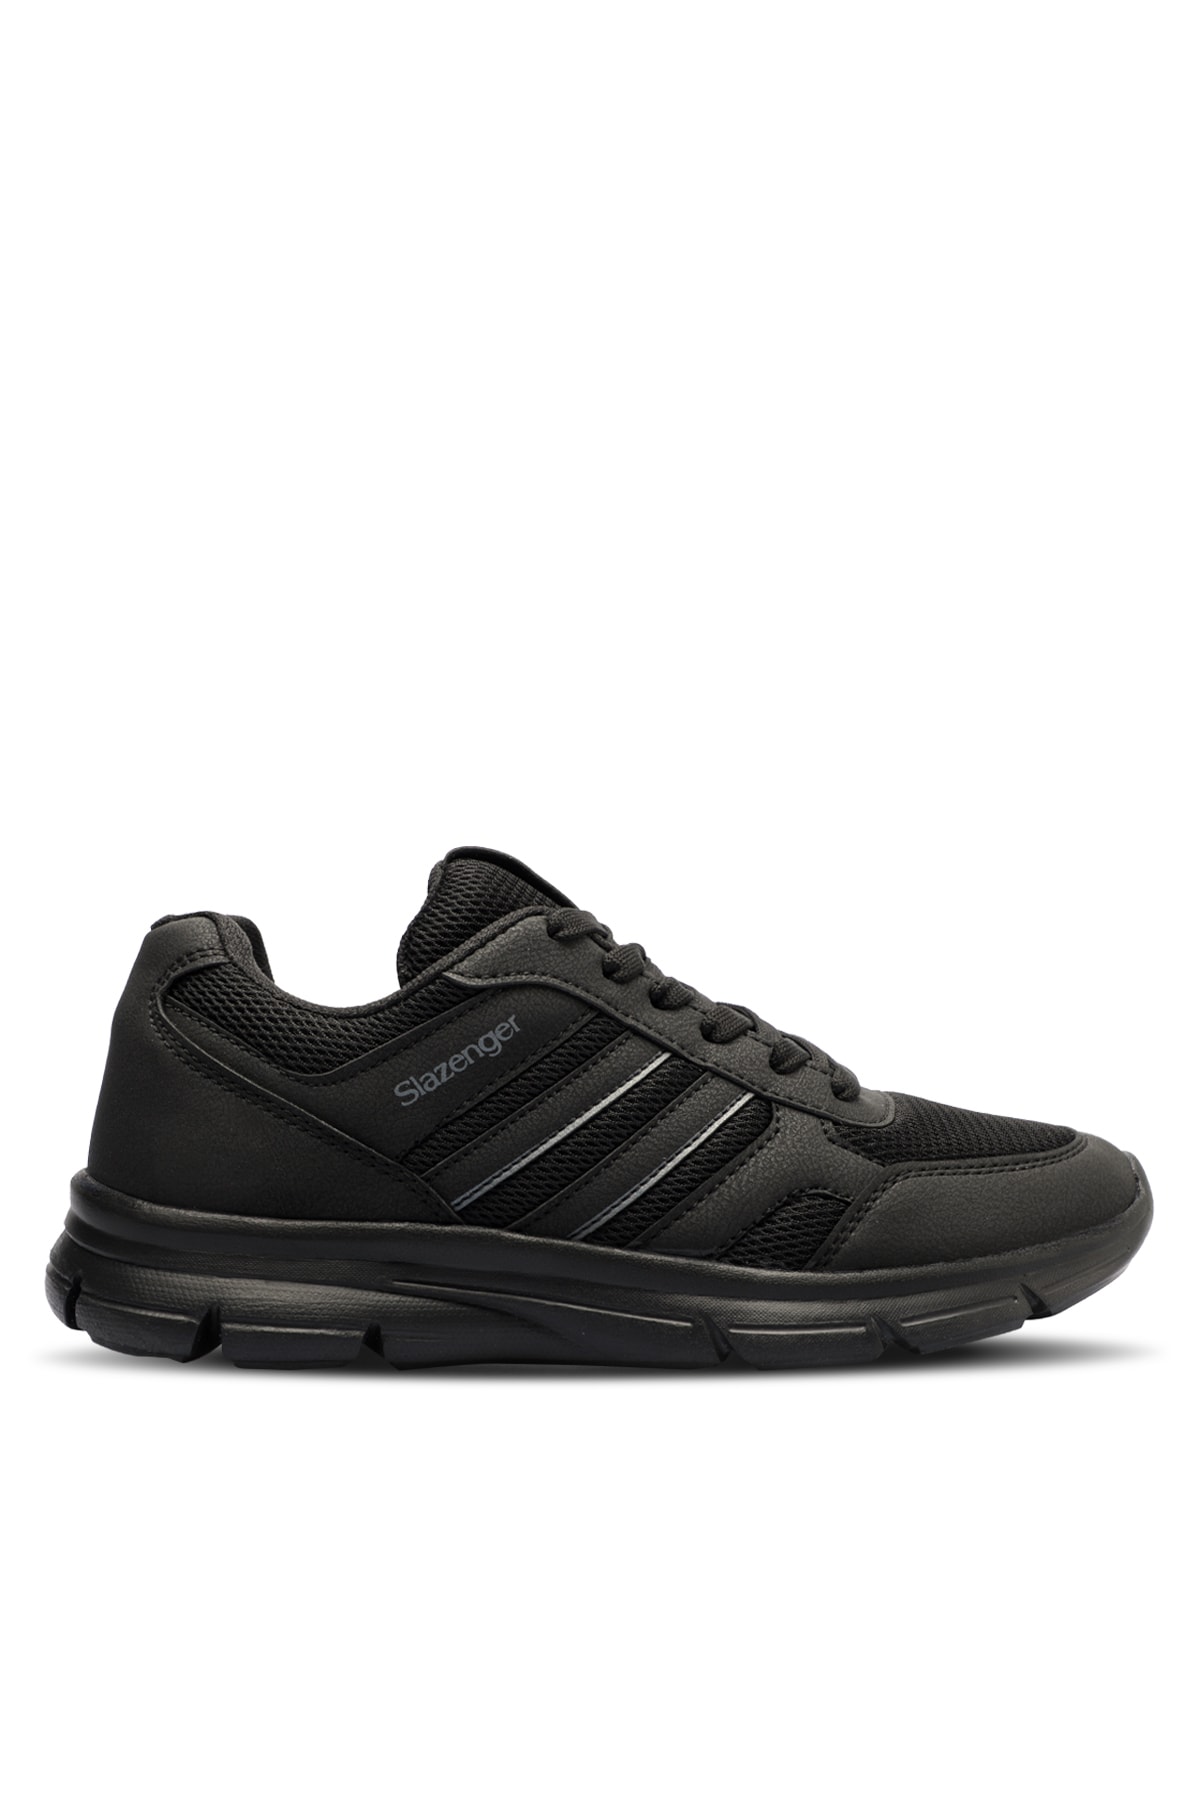 Levně Slazenger Efrat Sneaker Men's Shoes Black / Black